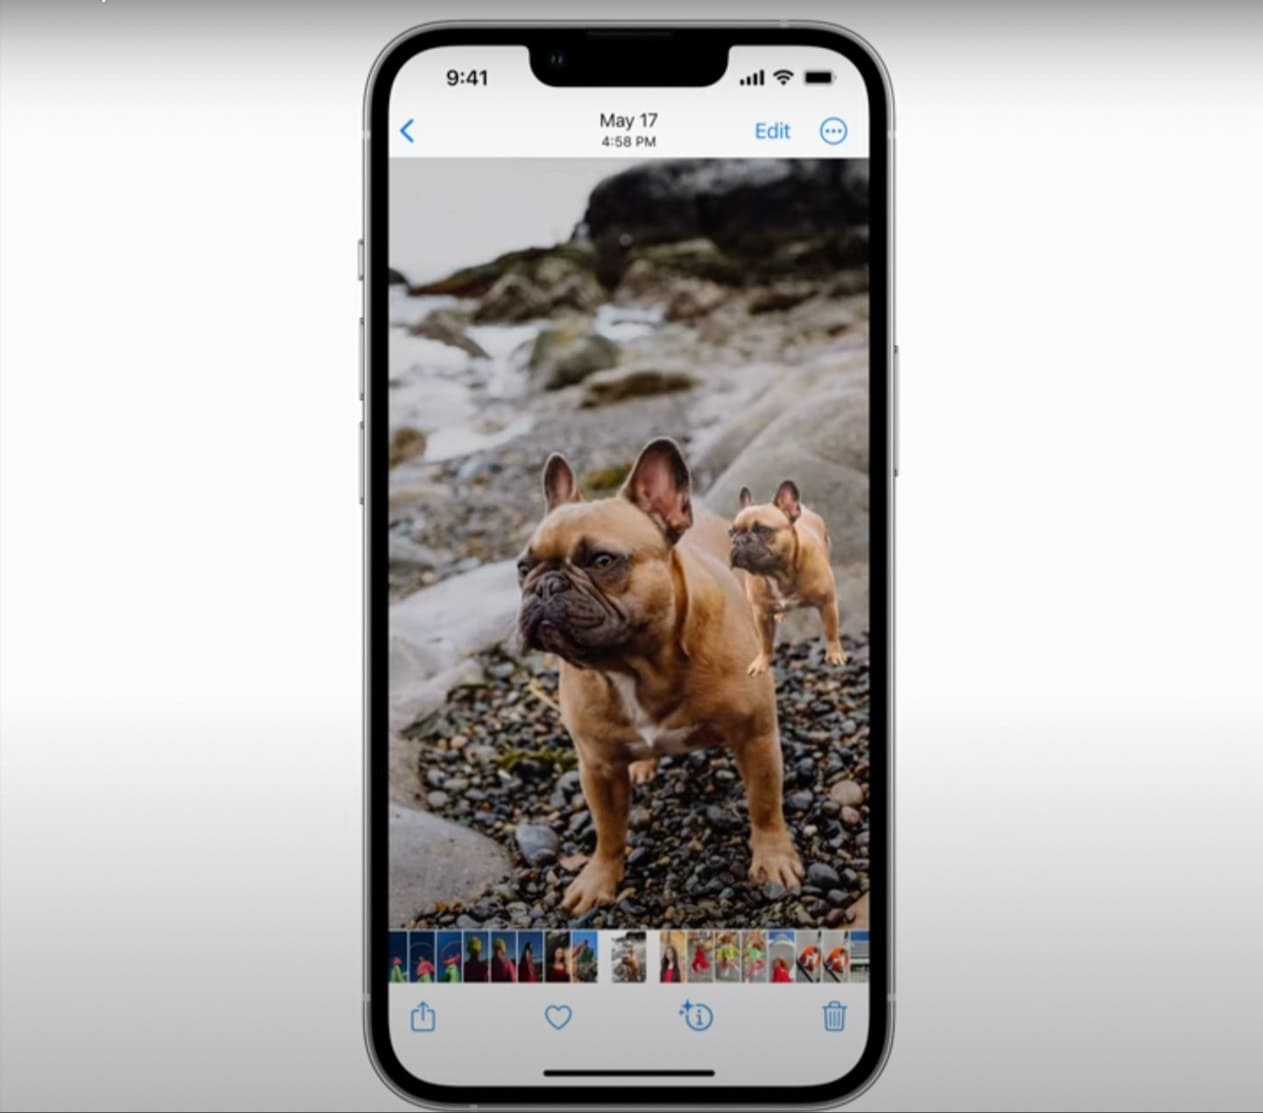 Tách nền ảnh Samsung: Công nghệ tách nền ảnh trên điện thoại Samsung đã cập nhật lên phiên bản mới đưa trải nghiệm cho người dùng lên một tầm cao mới. Việc tách nền ảnh nhanh chóng và chính xác giúp cho những bức ảnh của bạn trở nên đẹp mắt hơn. Hãy thử nghiệm công nghệ này để tạo nên những bức ảnh thật lung linh nhé!